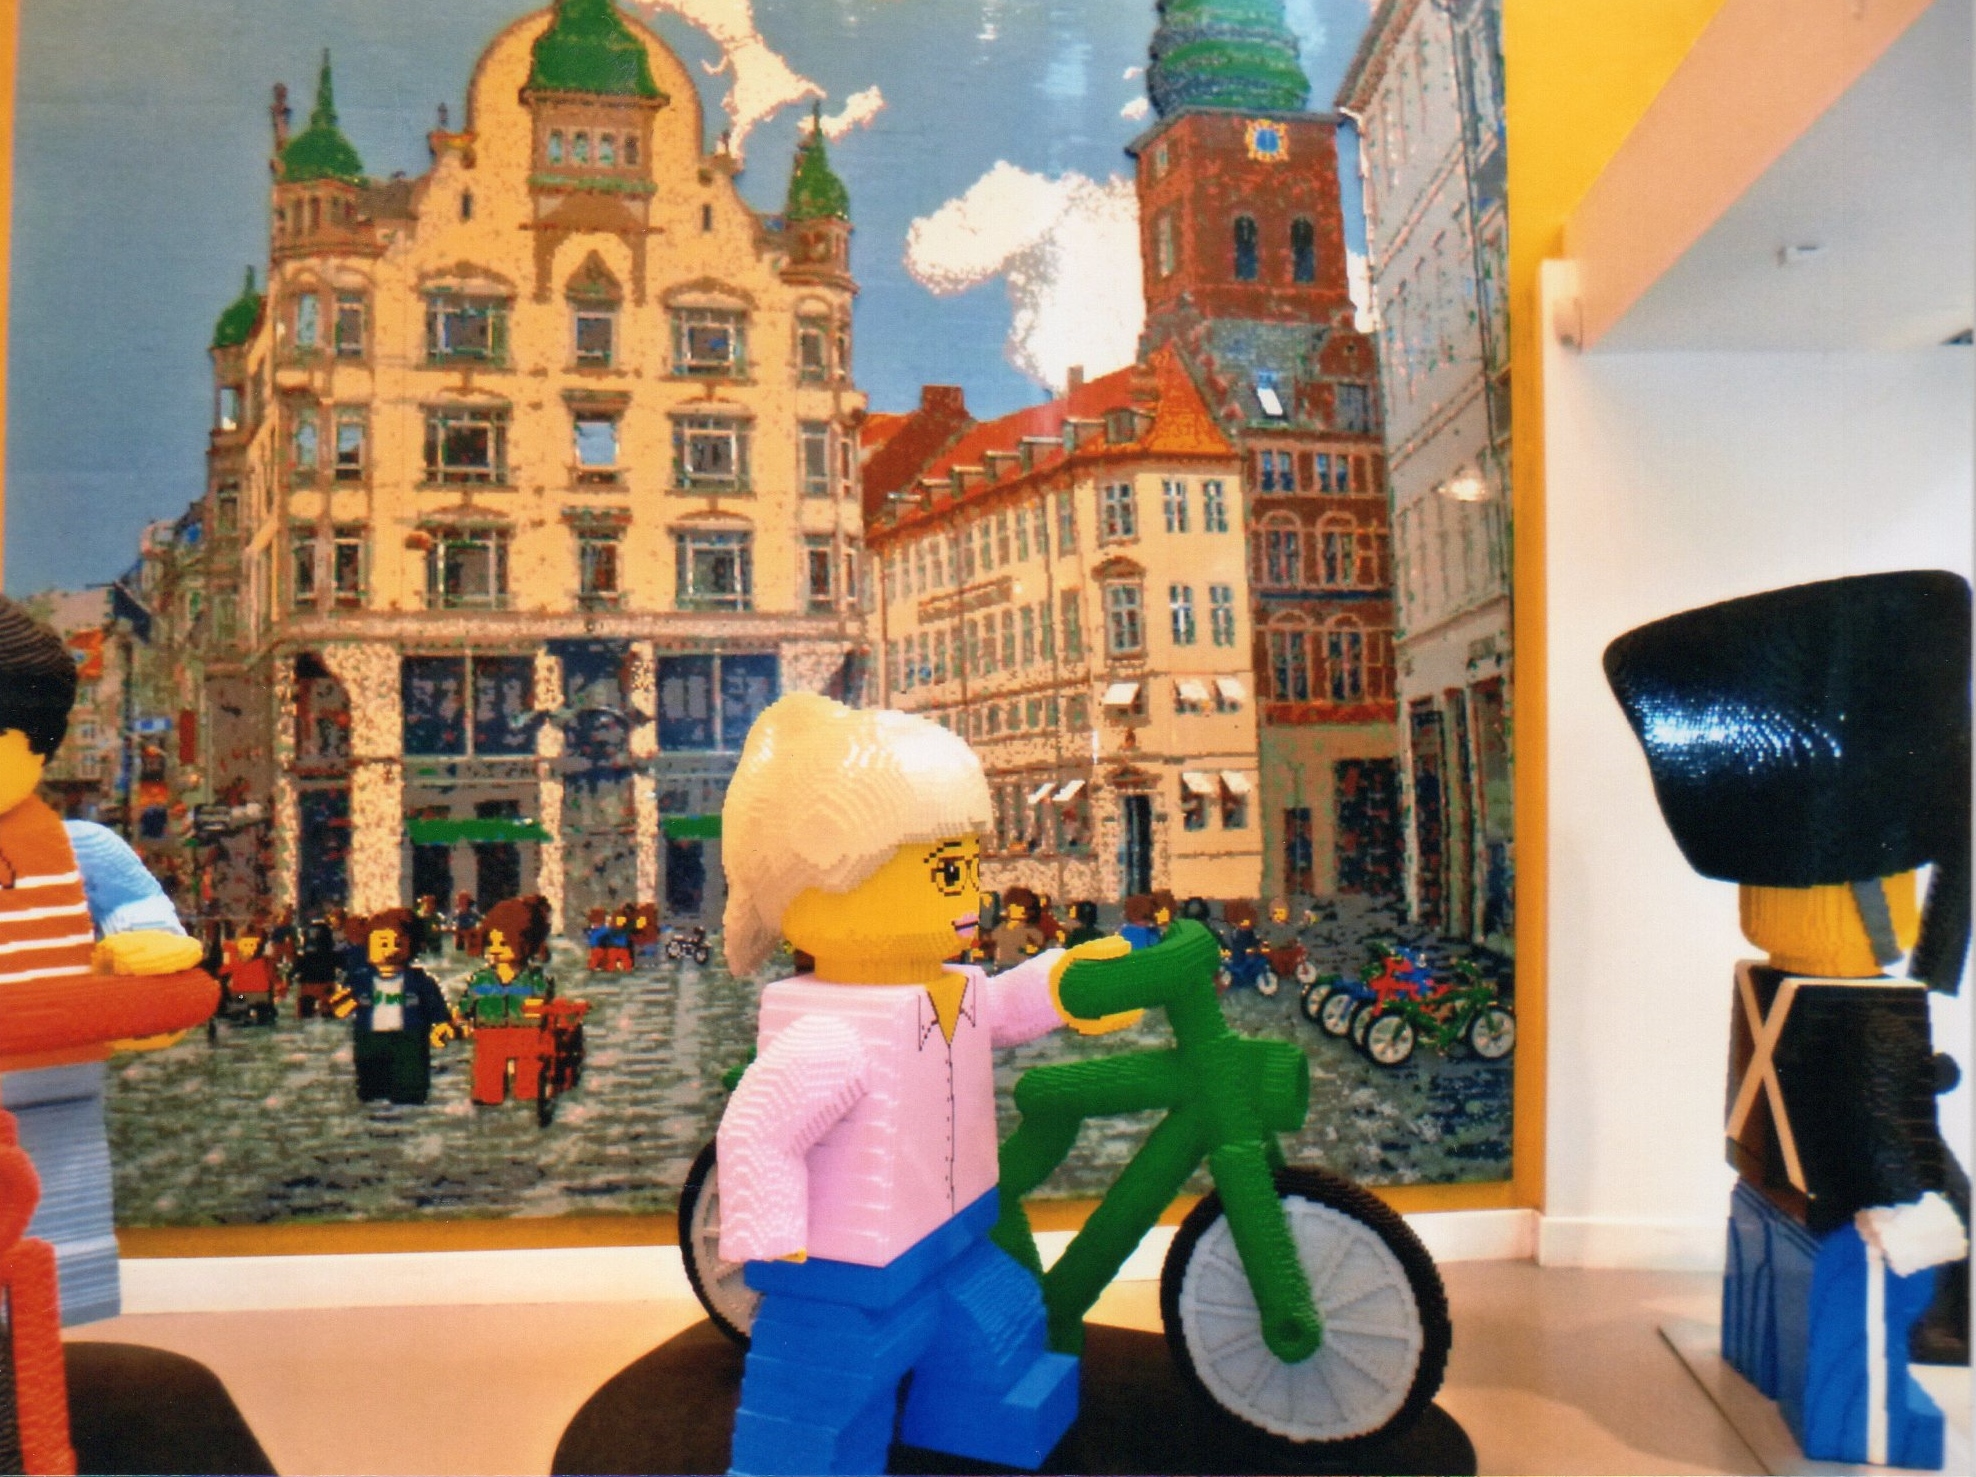 Lego Store Copenhagen